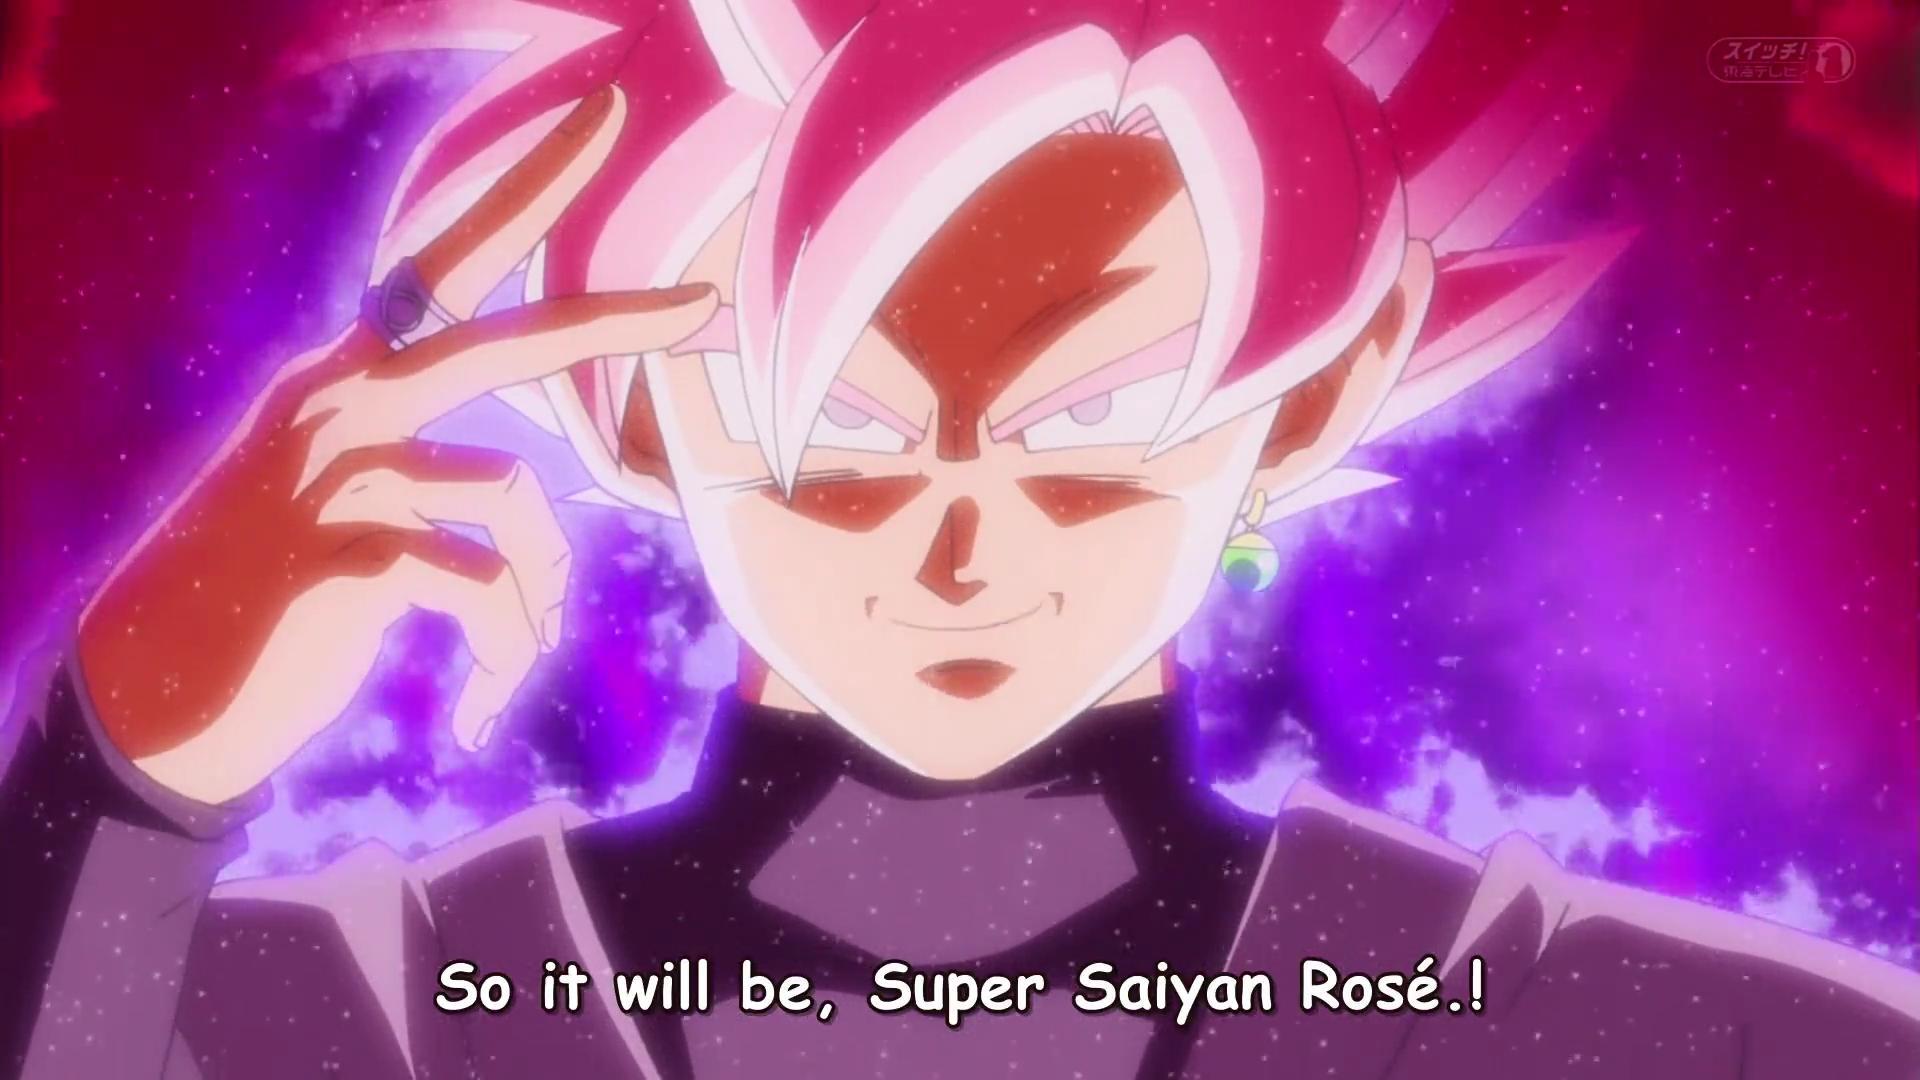 Black Super Saiyan Rose